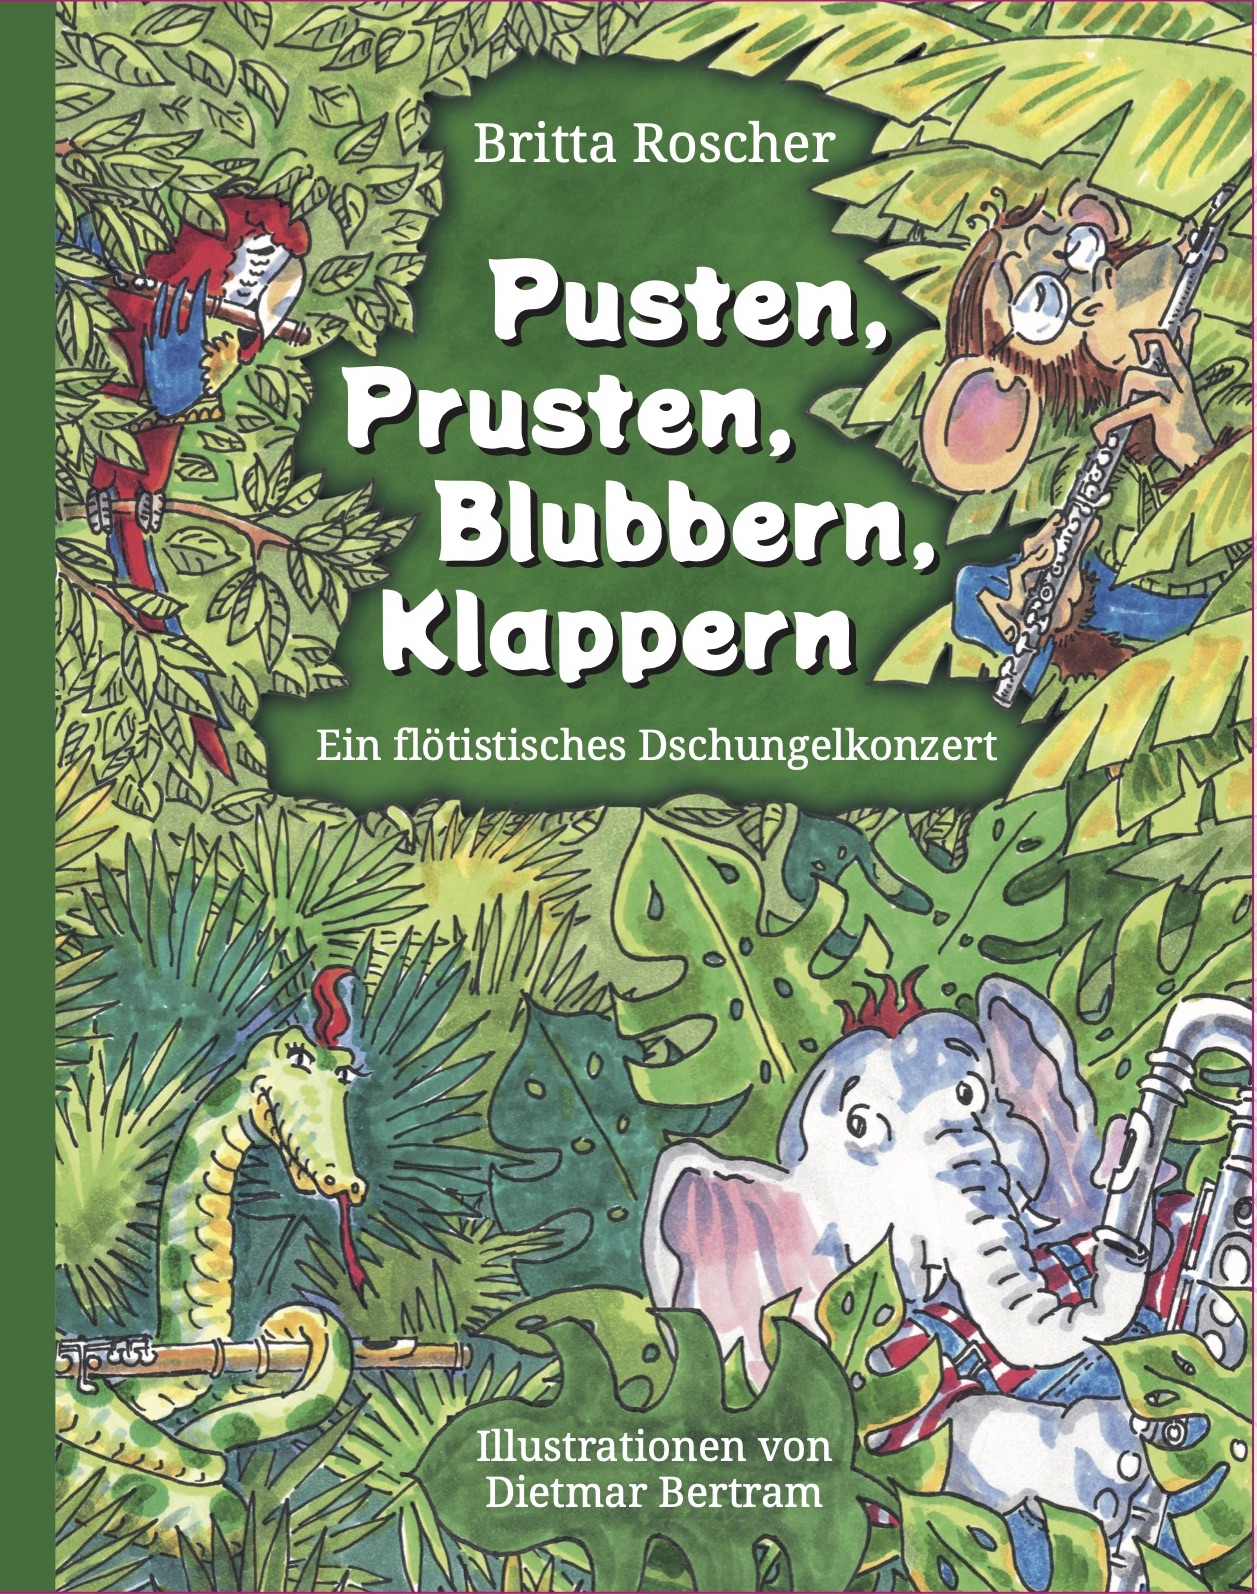 Pusten Prusten Blubbern Klappern ist ein musikalisches Kinderbuch mit Tieren.